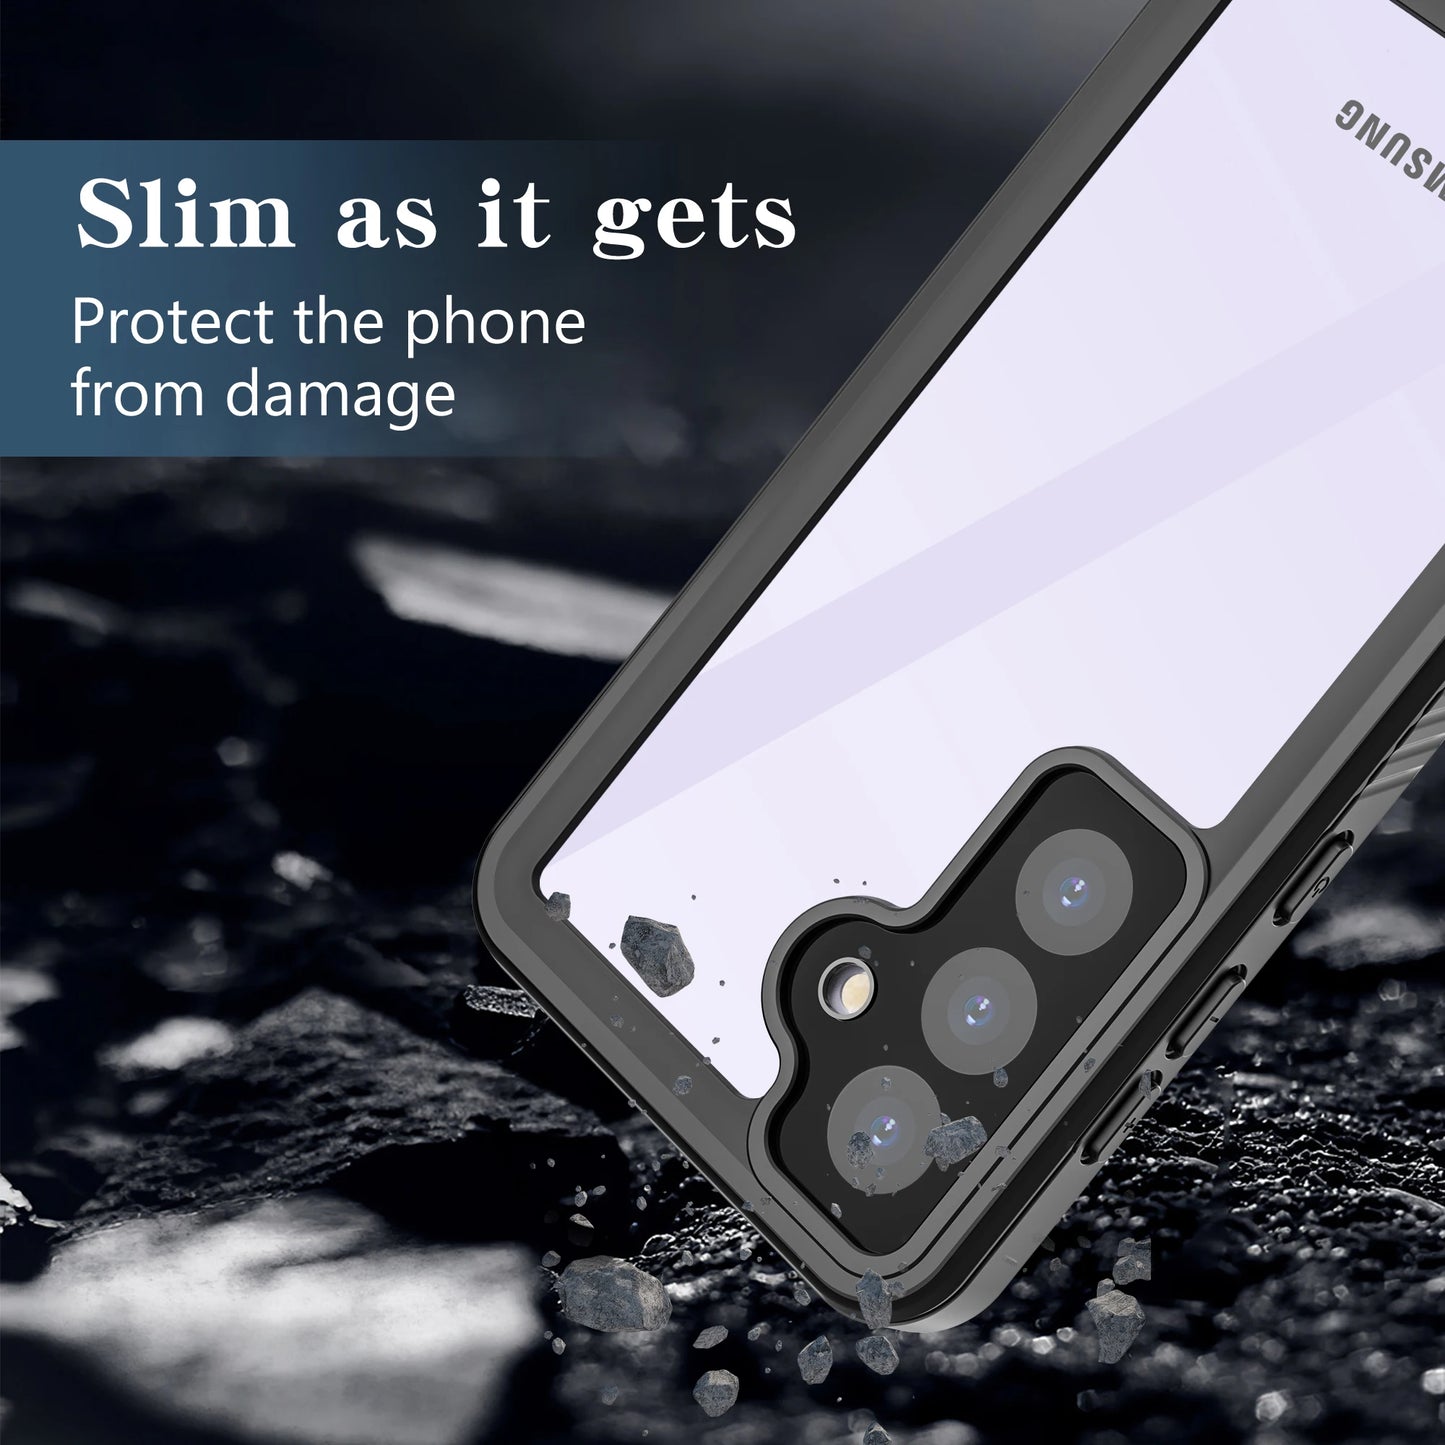 360 ° Fully Sealed Waterproof Phone Case